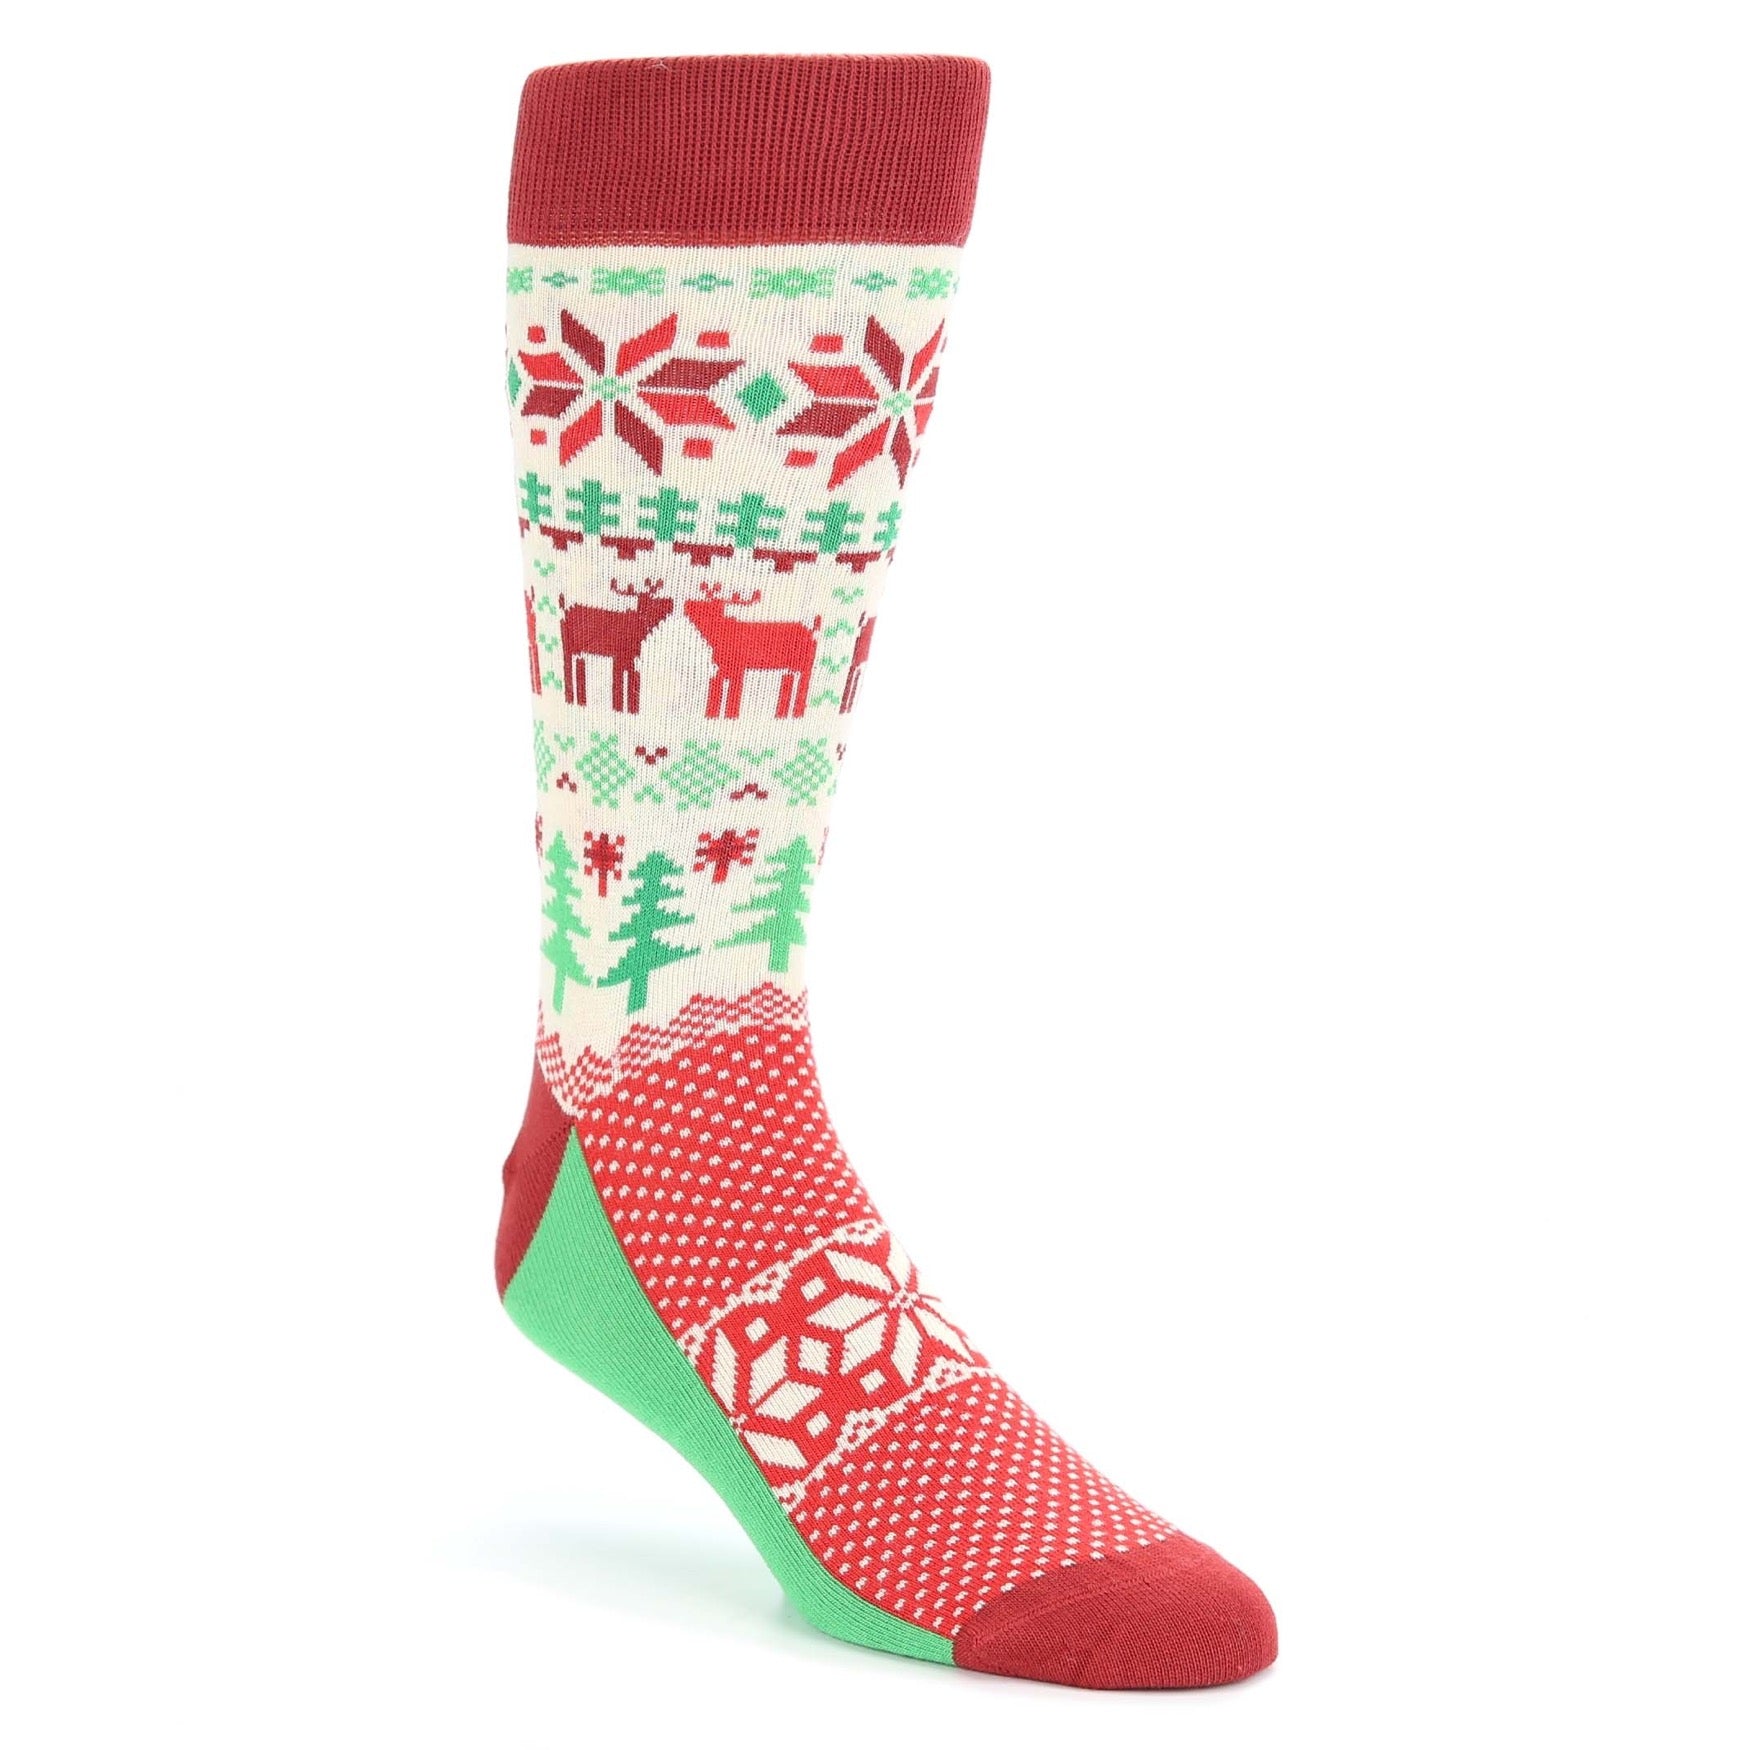 Fair Isle Christmas Socks - Men's Novelty Dress Socks